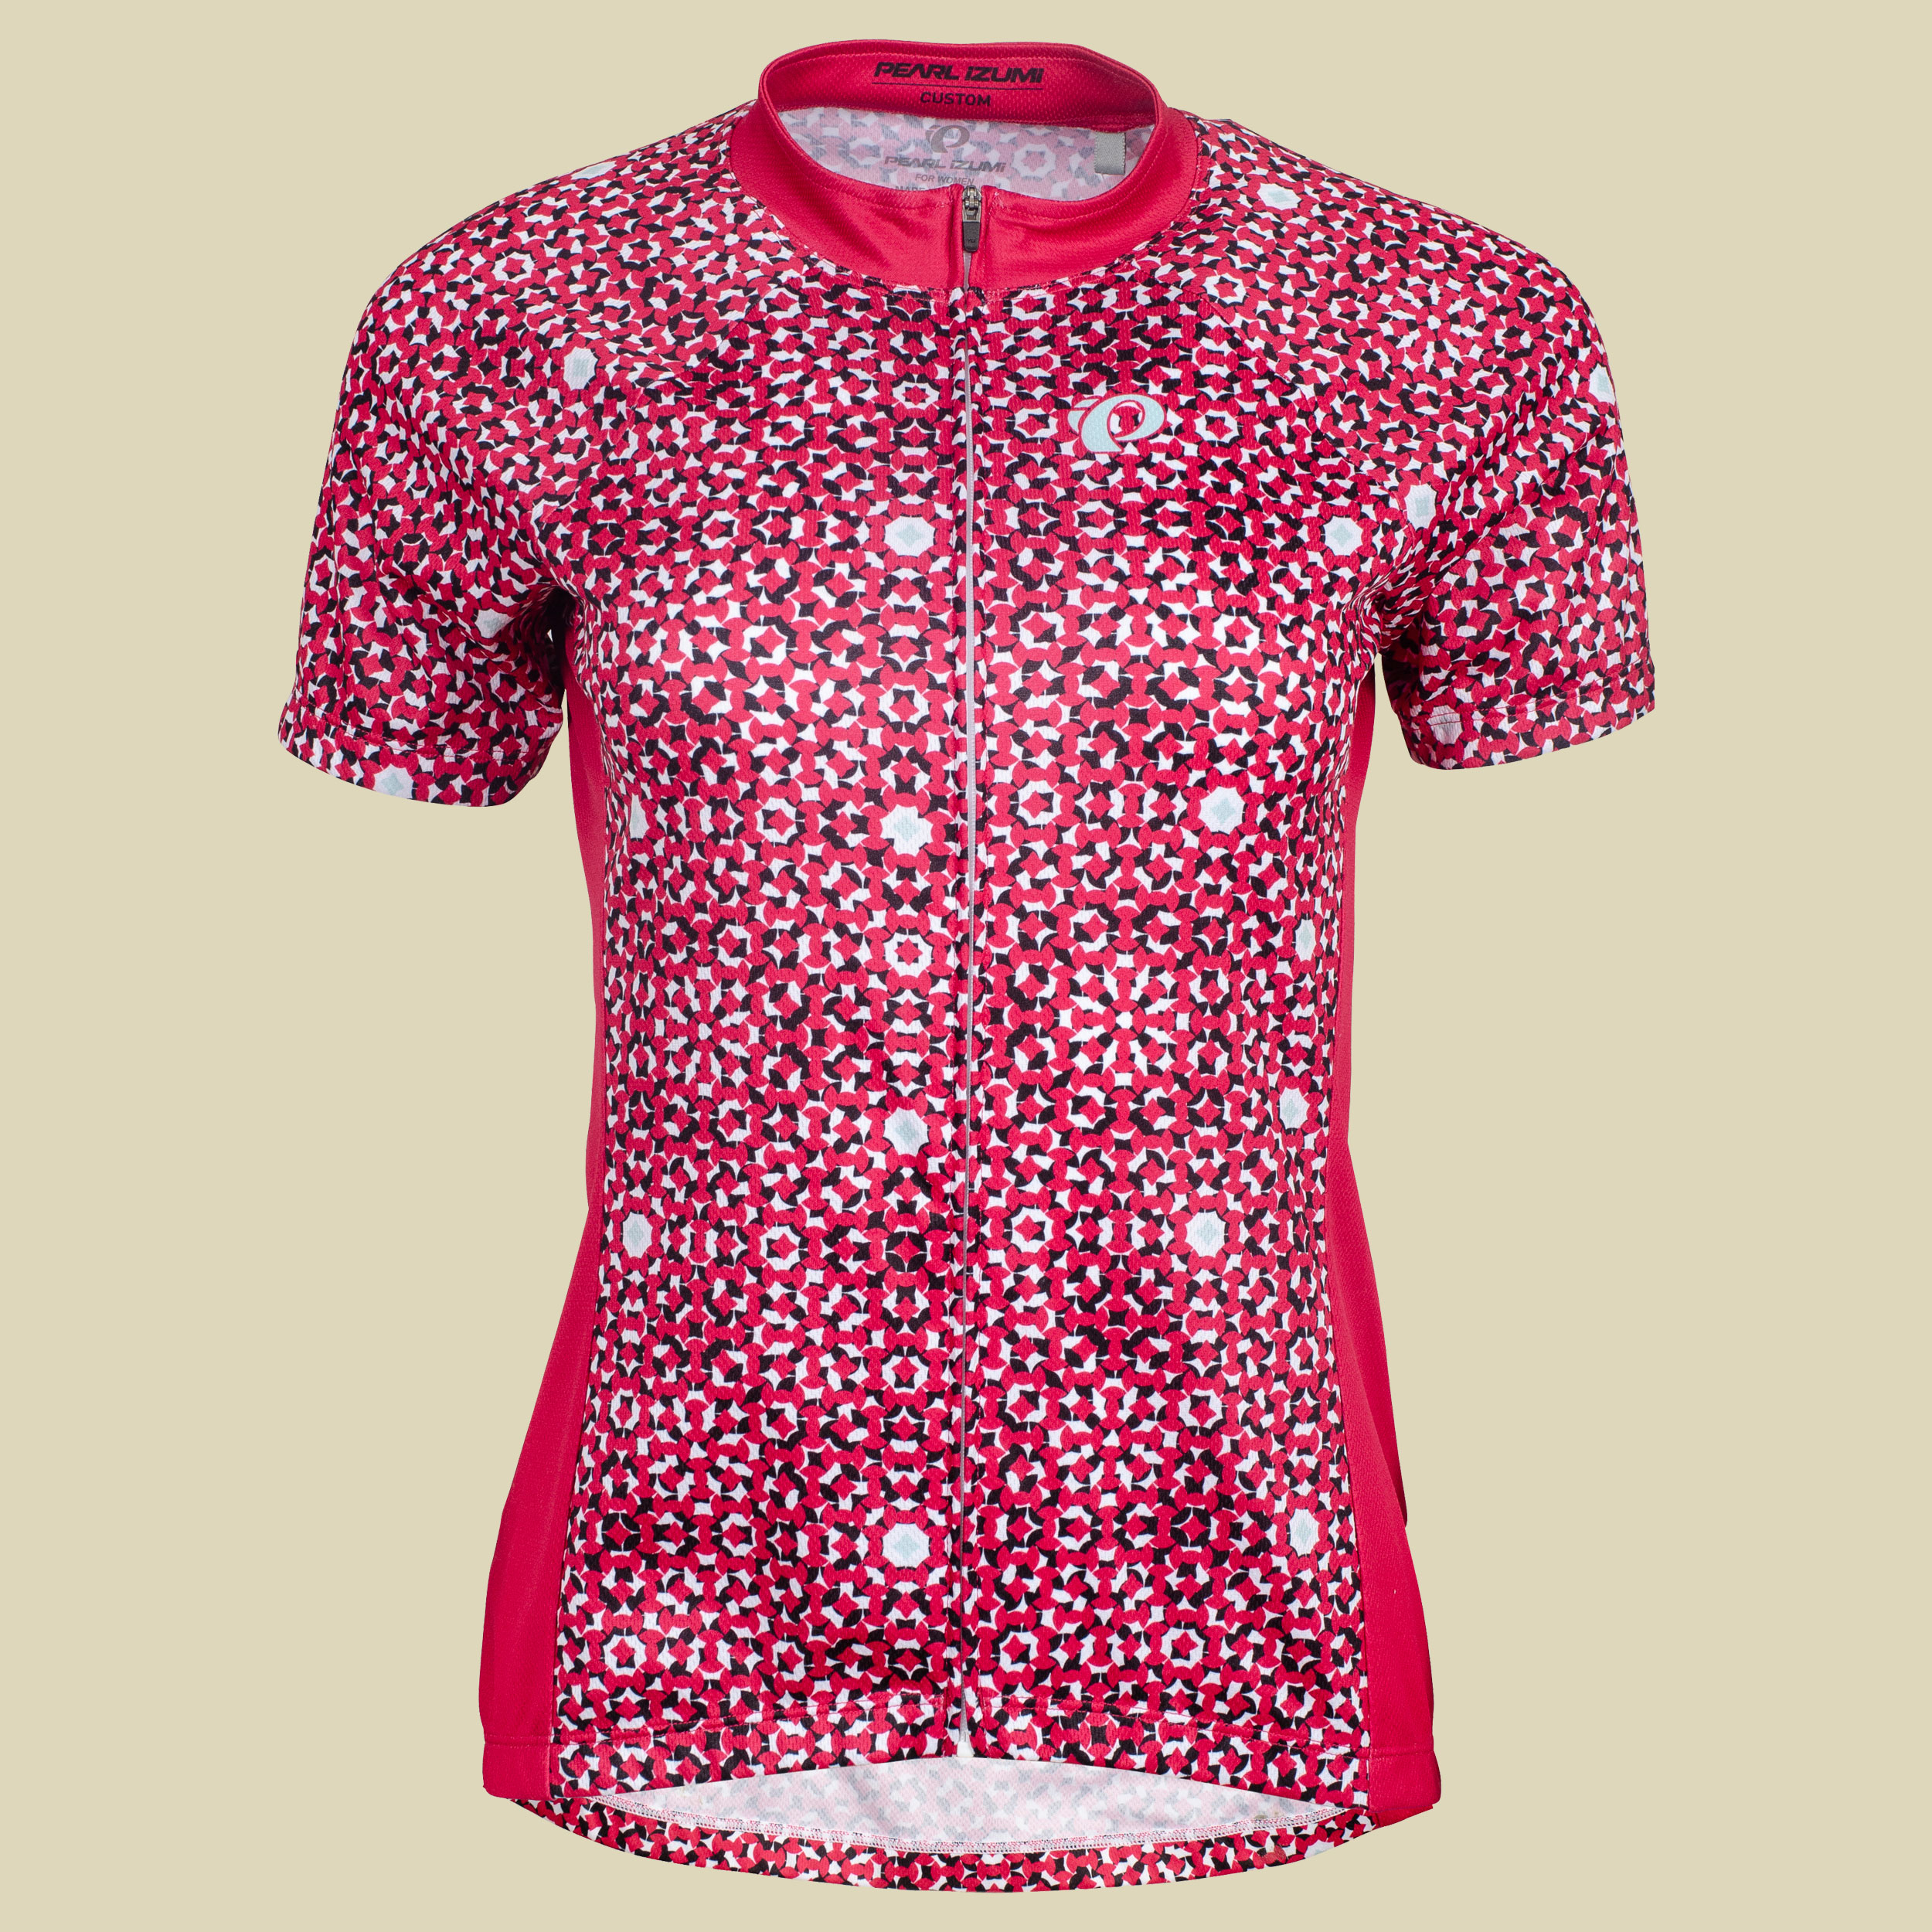 Select Escape LTD Jersey Women Größe XL Farbe sportive virtual pink